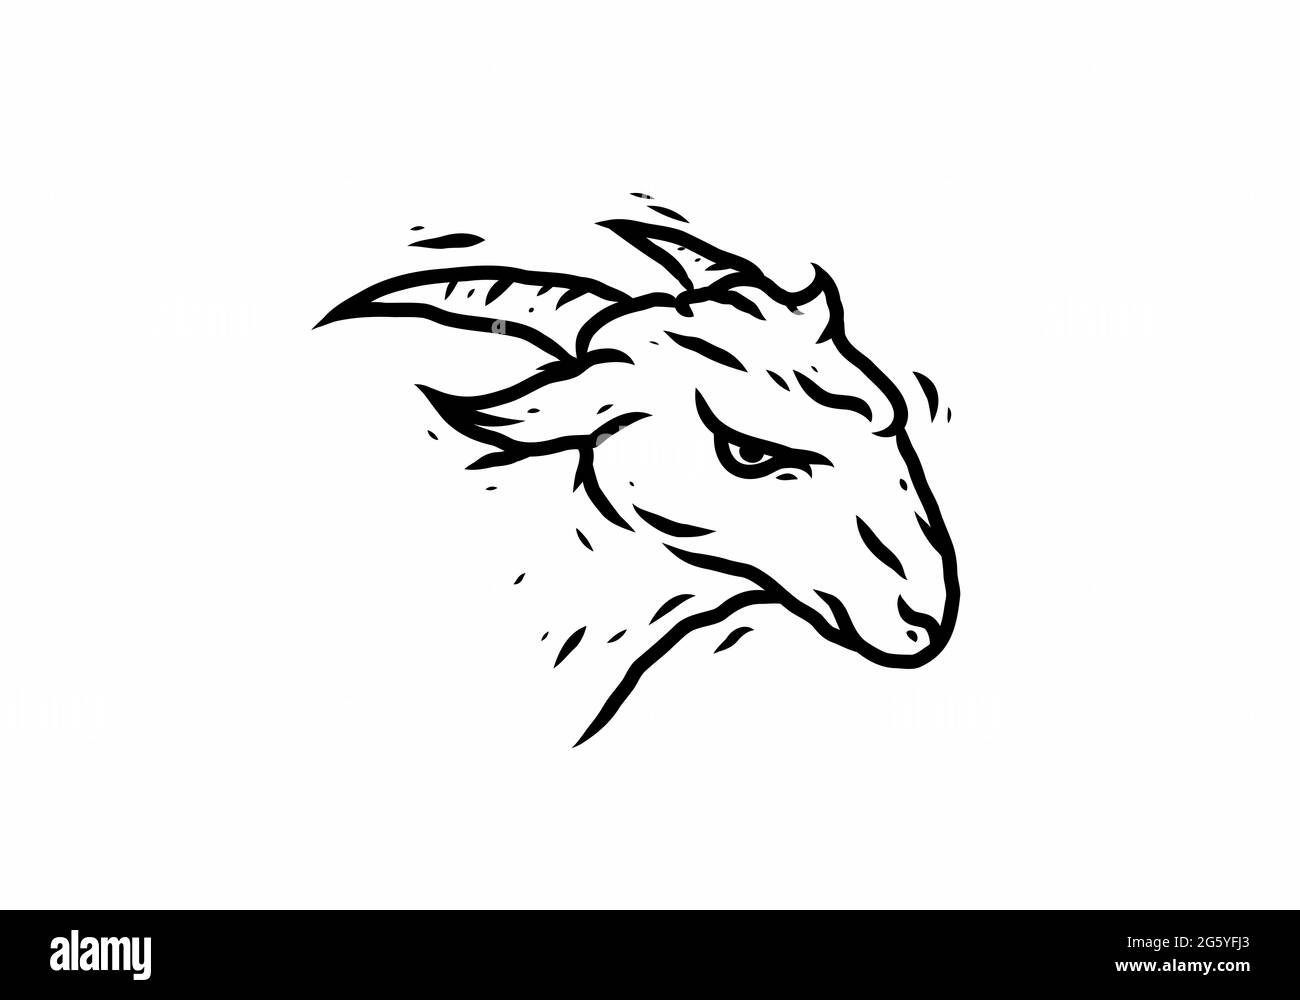 Dessin d'illustration noir de la chèvre Illustration de Vecteur